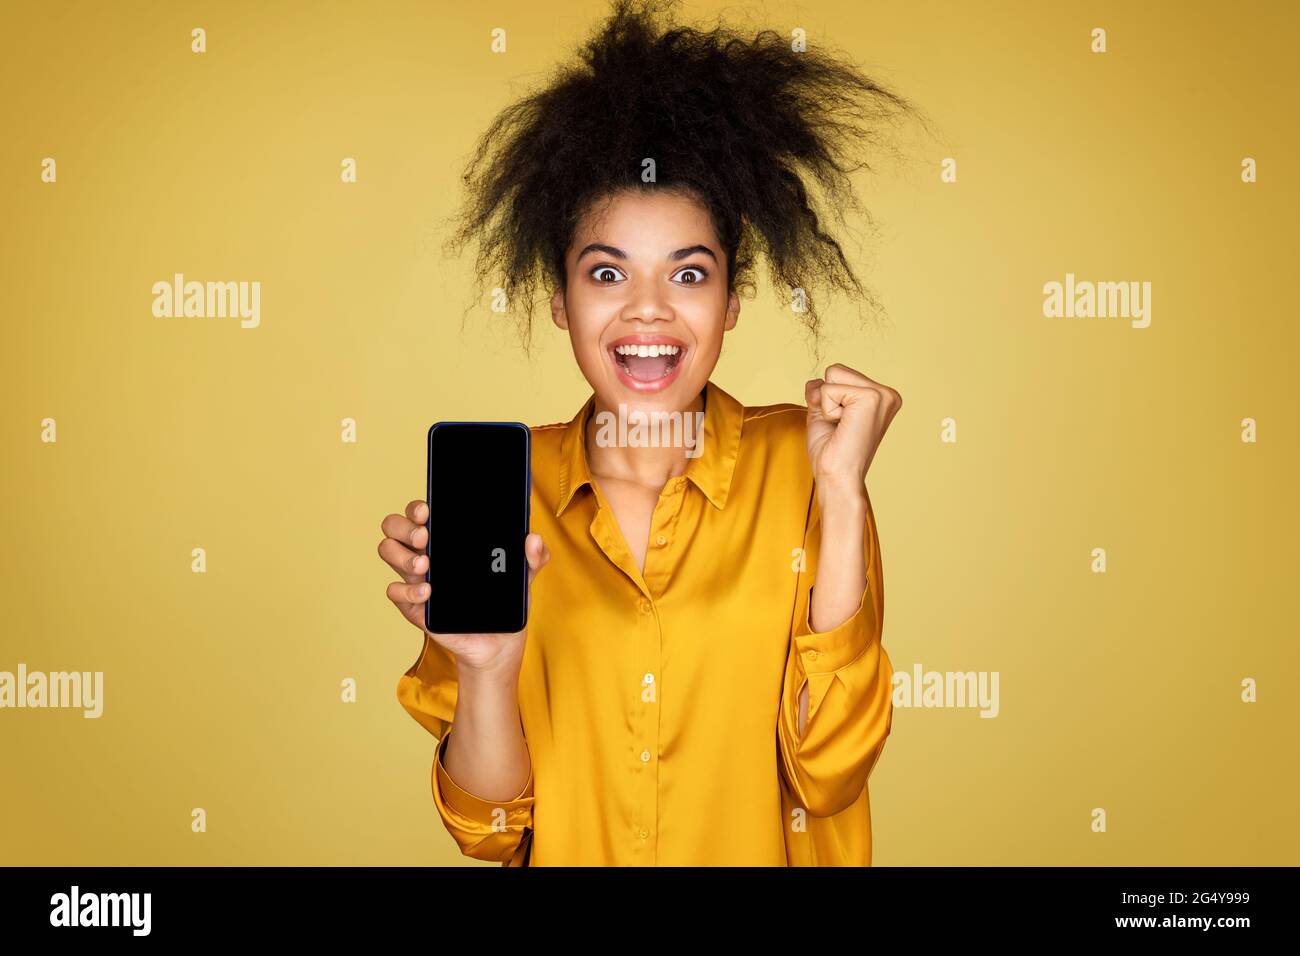 Une fille excitée montre un smartphone et des clenches poing, se sent trop joyeuse après avoir gagné ou de bonnes nouvelles. Photo d'une fille afro-américaine sur fond jaune Banque D'Images